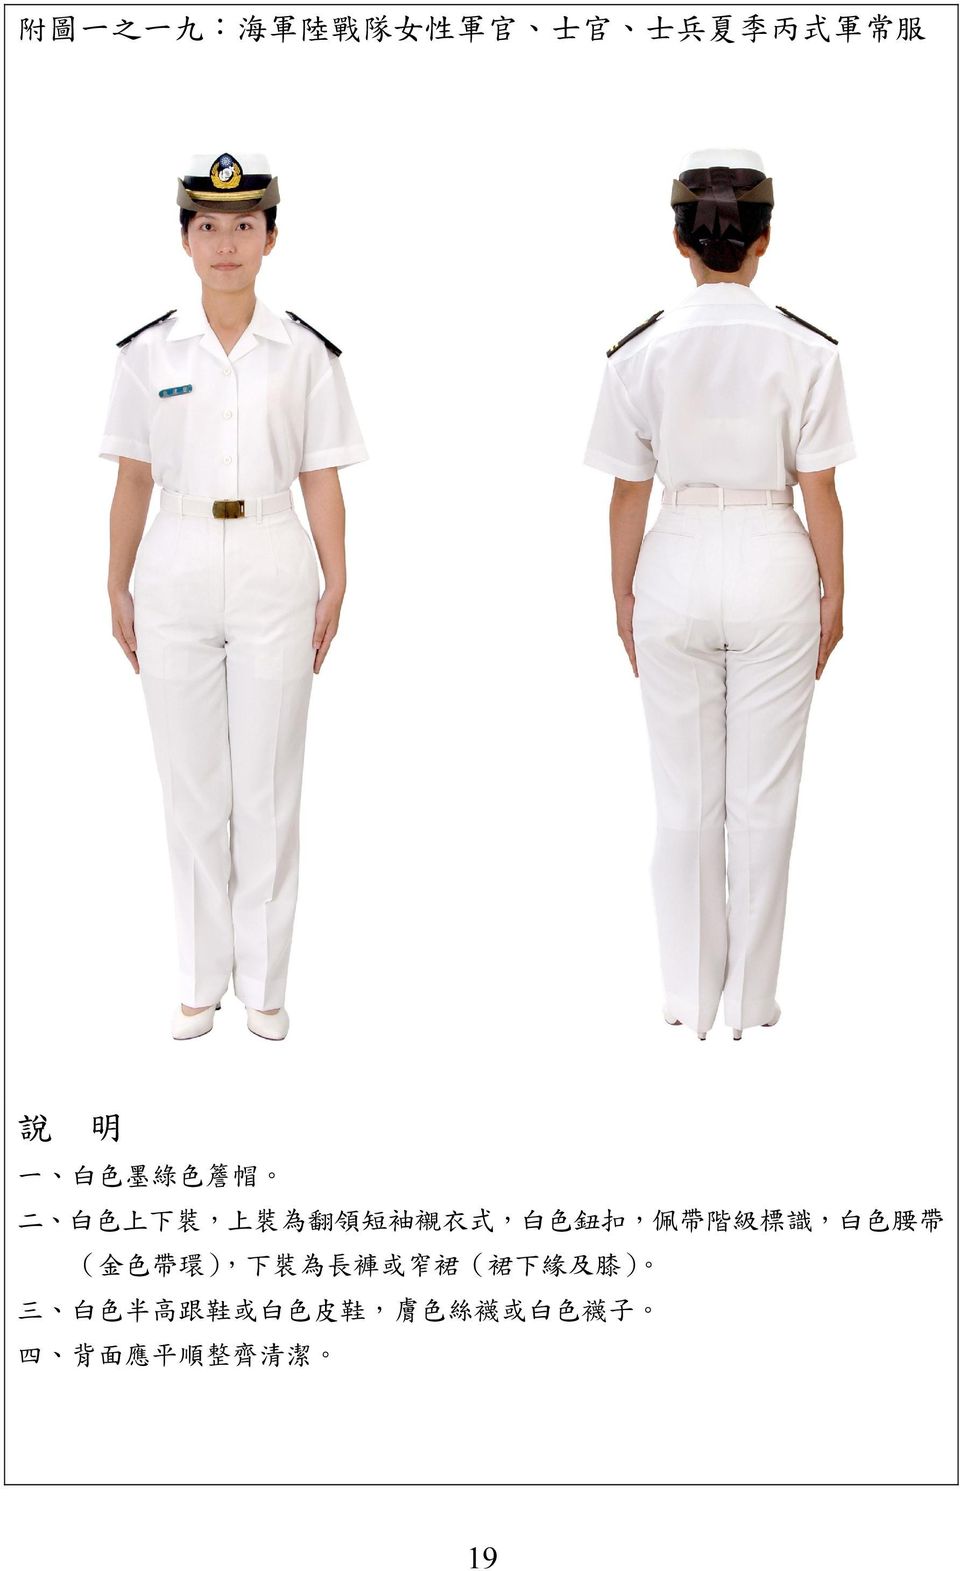 扣, 佩 帶 階 級 標 識, 白 色 腰 帶 ( 金 色 帶 環 ), 下 裝 為 長 褲 或 窄 裙 (